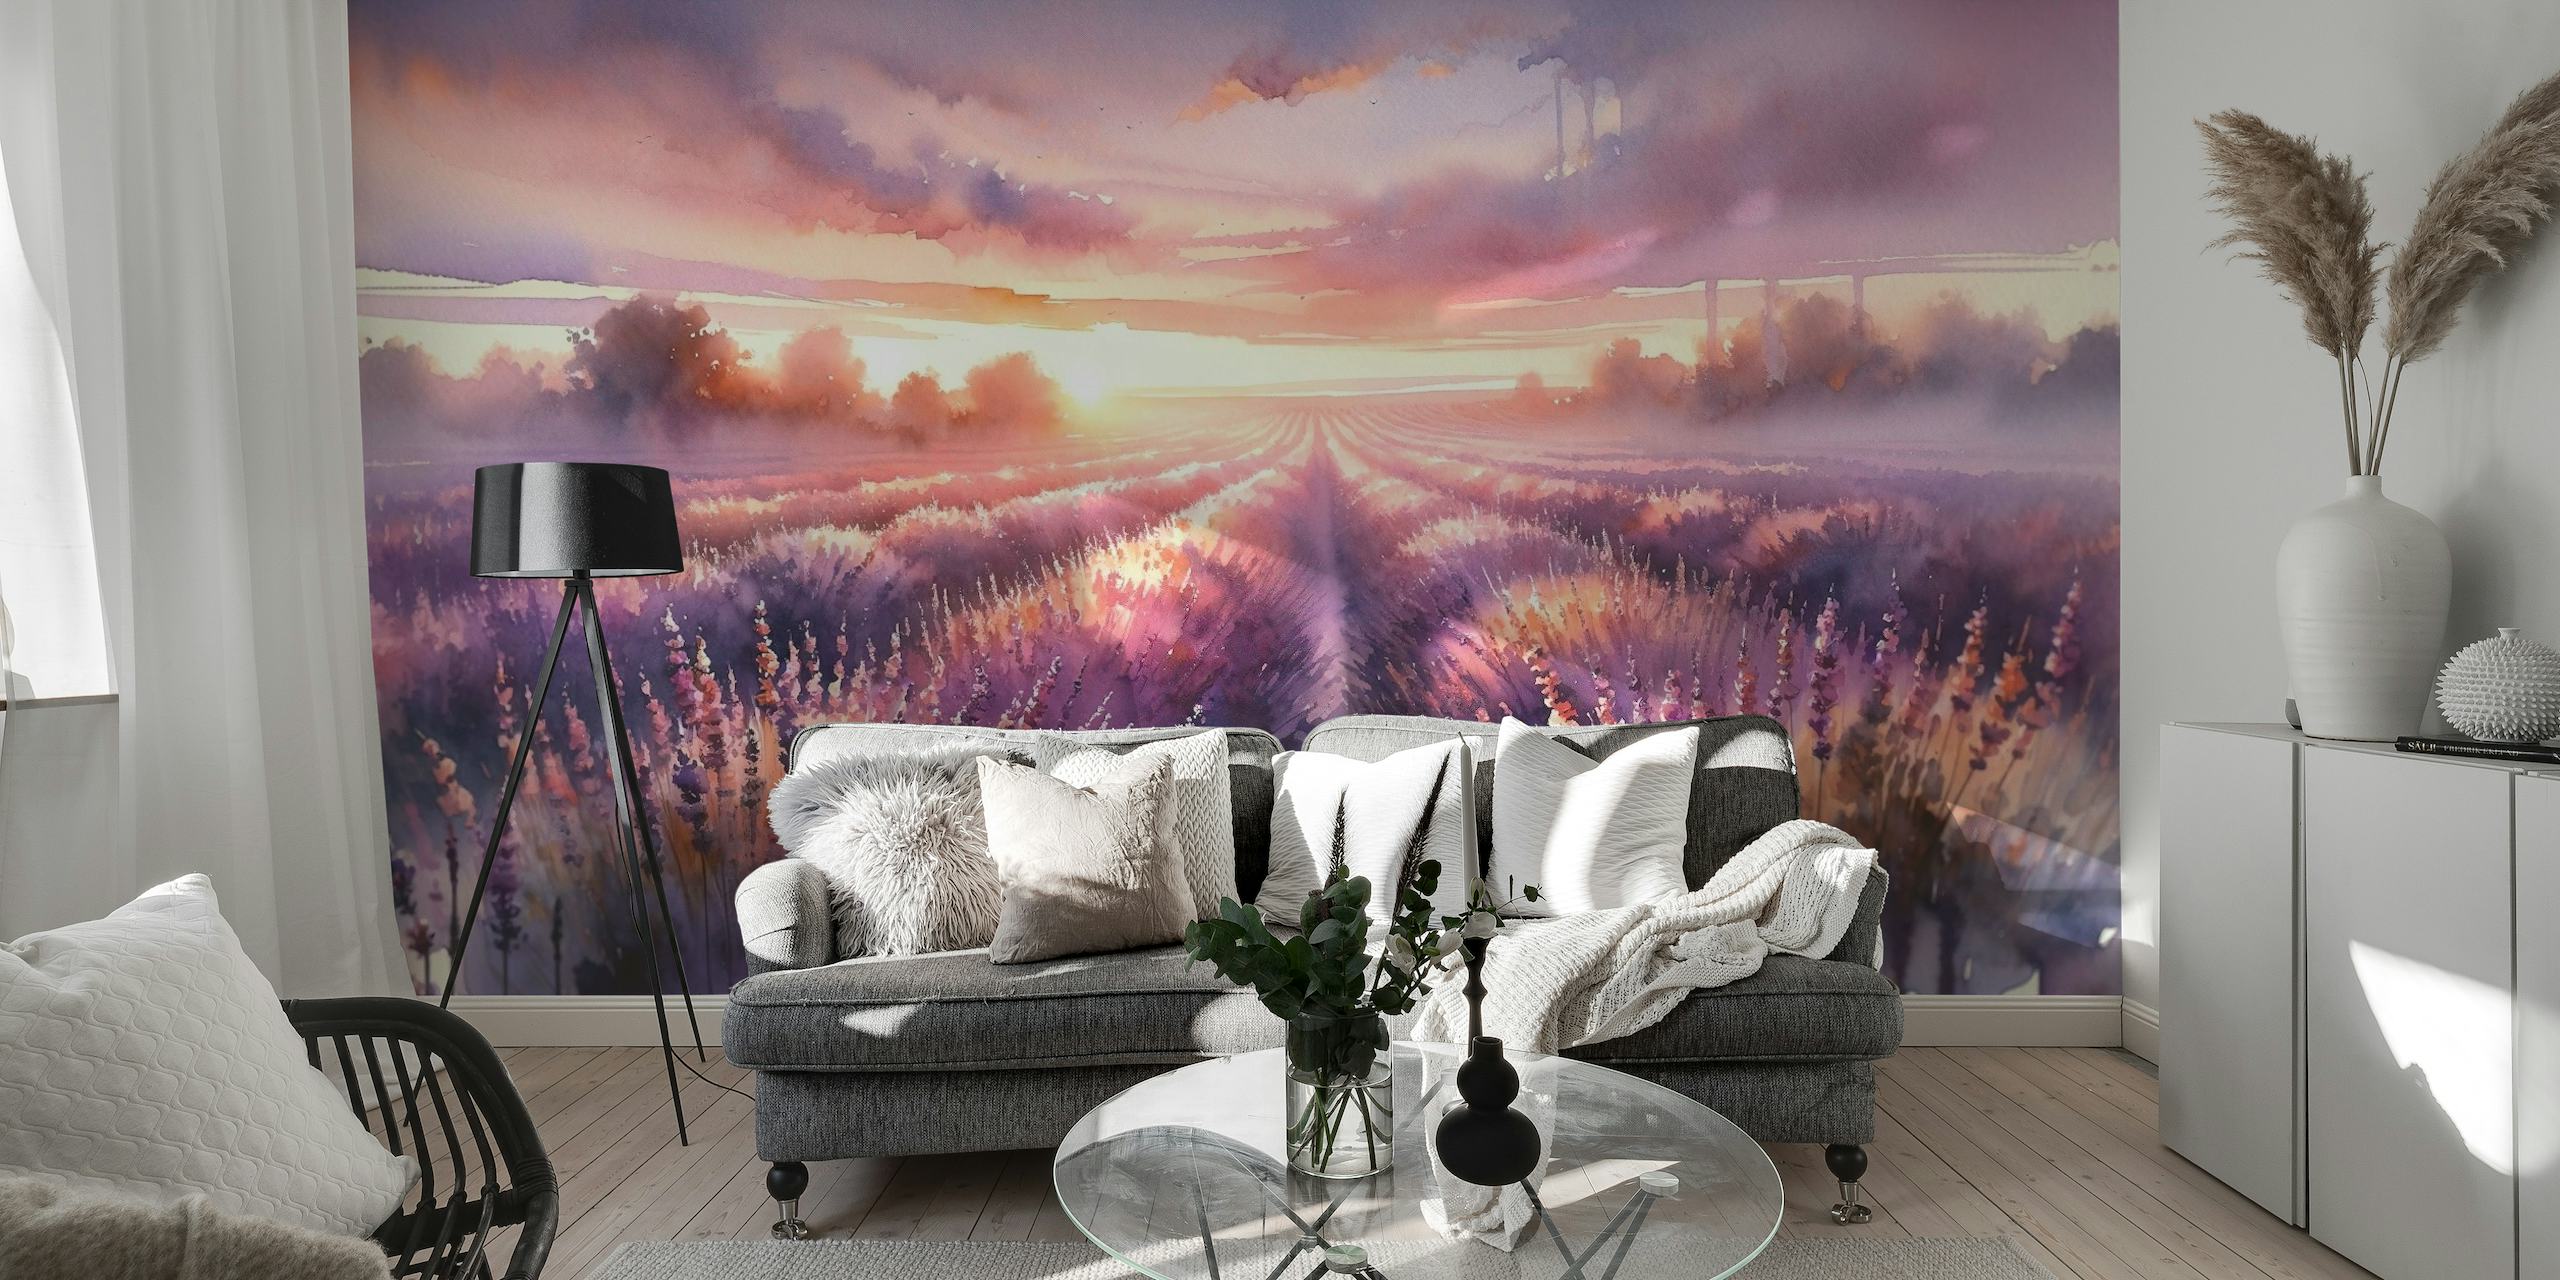 Dawn's Embrace in Lavender Fields wallpaper